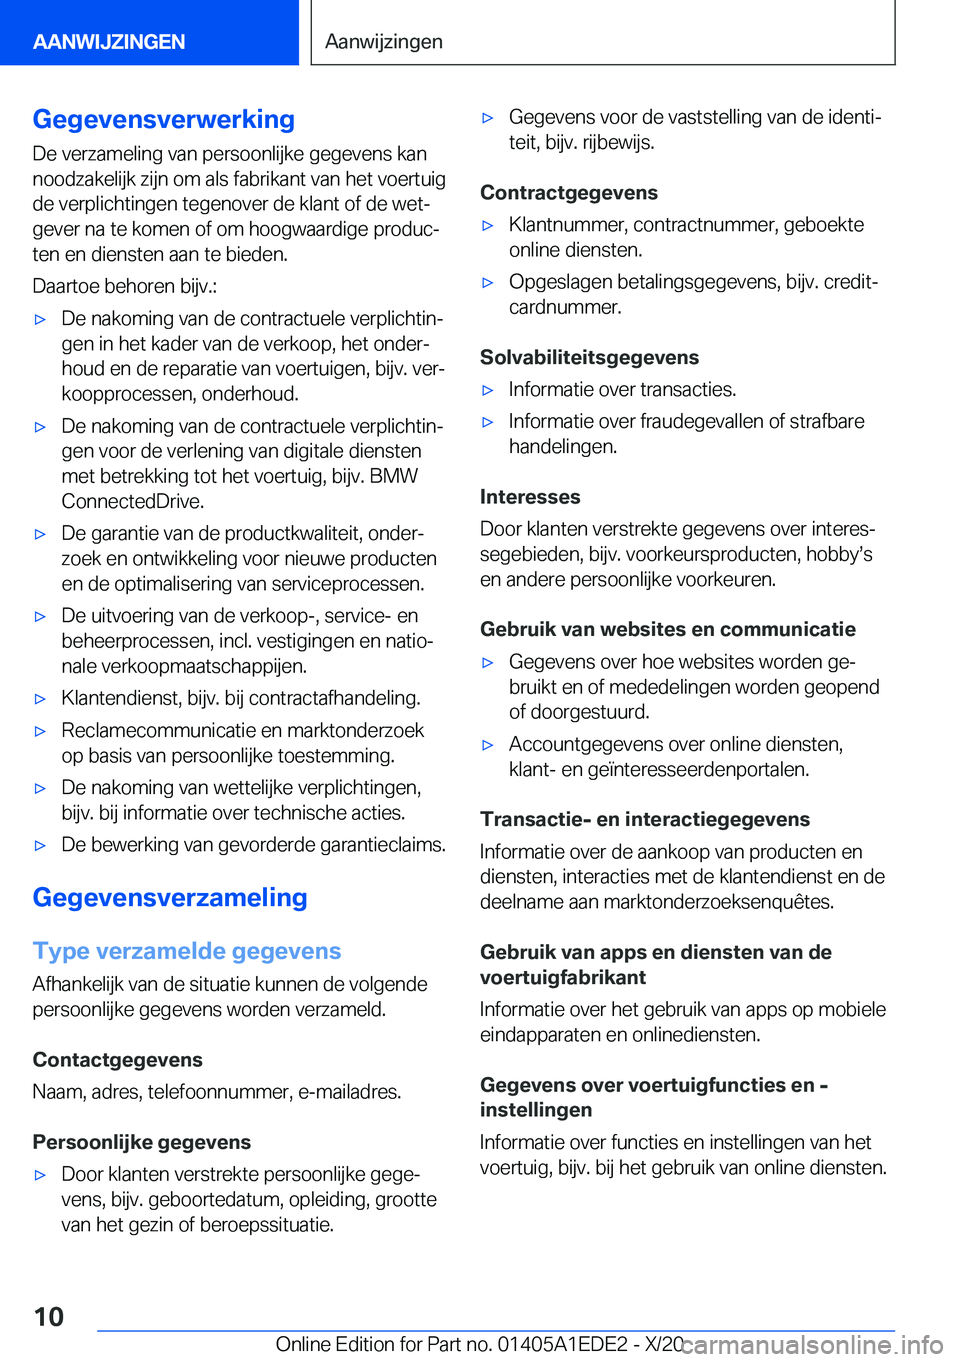 BMW 8 SERIES CONVERTIBLE 2021  Instructieboekjes (in Dutch) �G�e�g�e�v�e�n�s�v�e�r�w�e�r�k�i�n�g
�D�e��v�e�r�z�a�m�e�l�i�n�g��v�a�n��p�e�r�s�o�o�n�l�i�j�k�e��g�e�g�e�v�e�n�s��k�a�n
�n�o�o�d�z�a�k�e�l�i�j�k��z�i�j�n��o�m��a�l�s��f�a�b�r�i�k�a�n�t��v�a